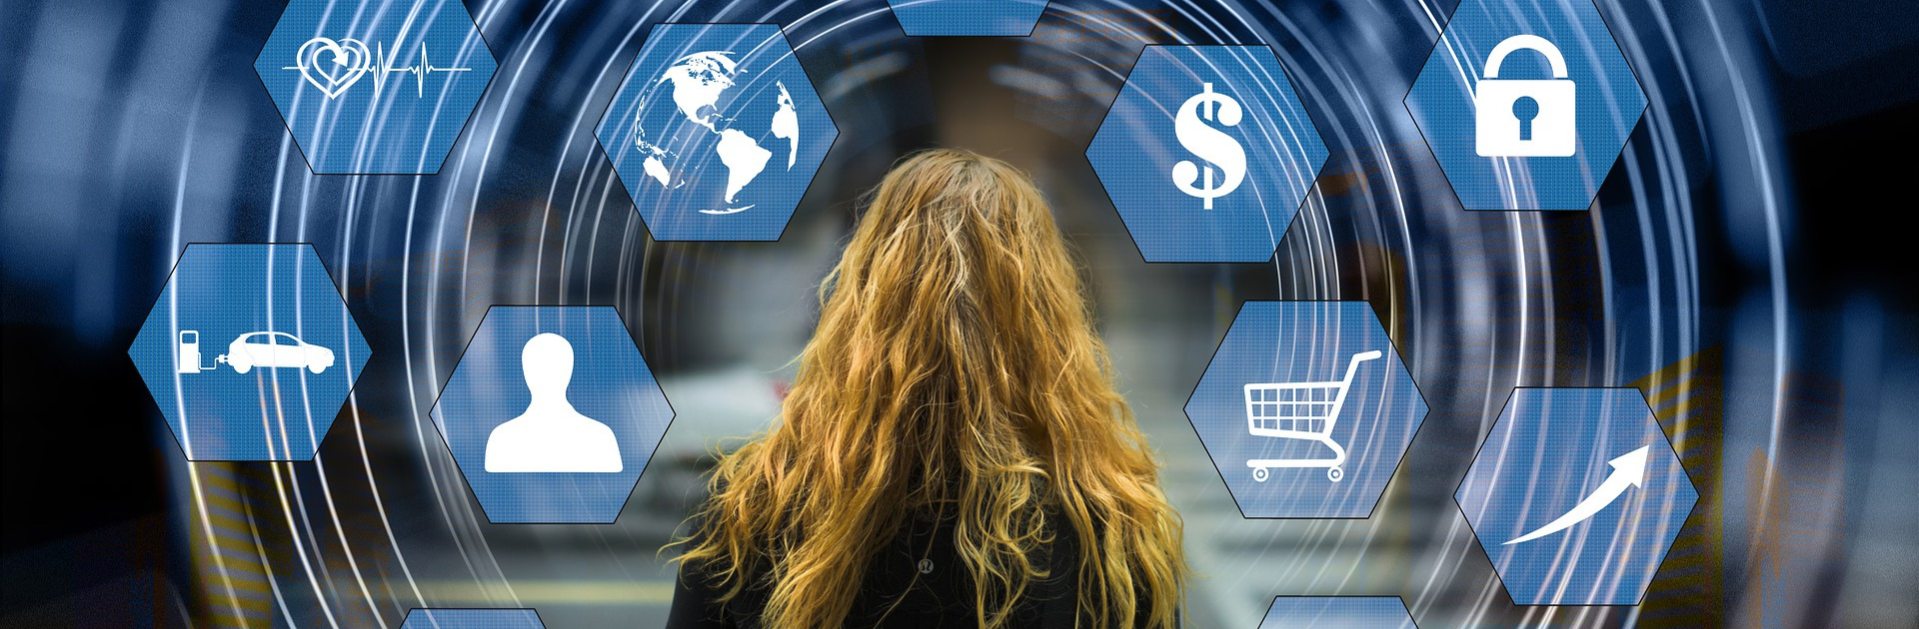 E-Commerce – Integration von Magento Online-Shops in Wirecards digitale Financial-Commerce-Plattform wird erleichtert